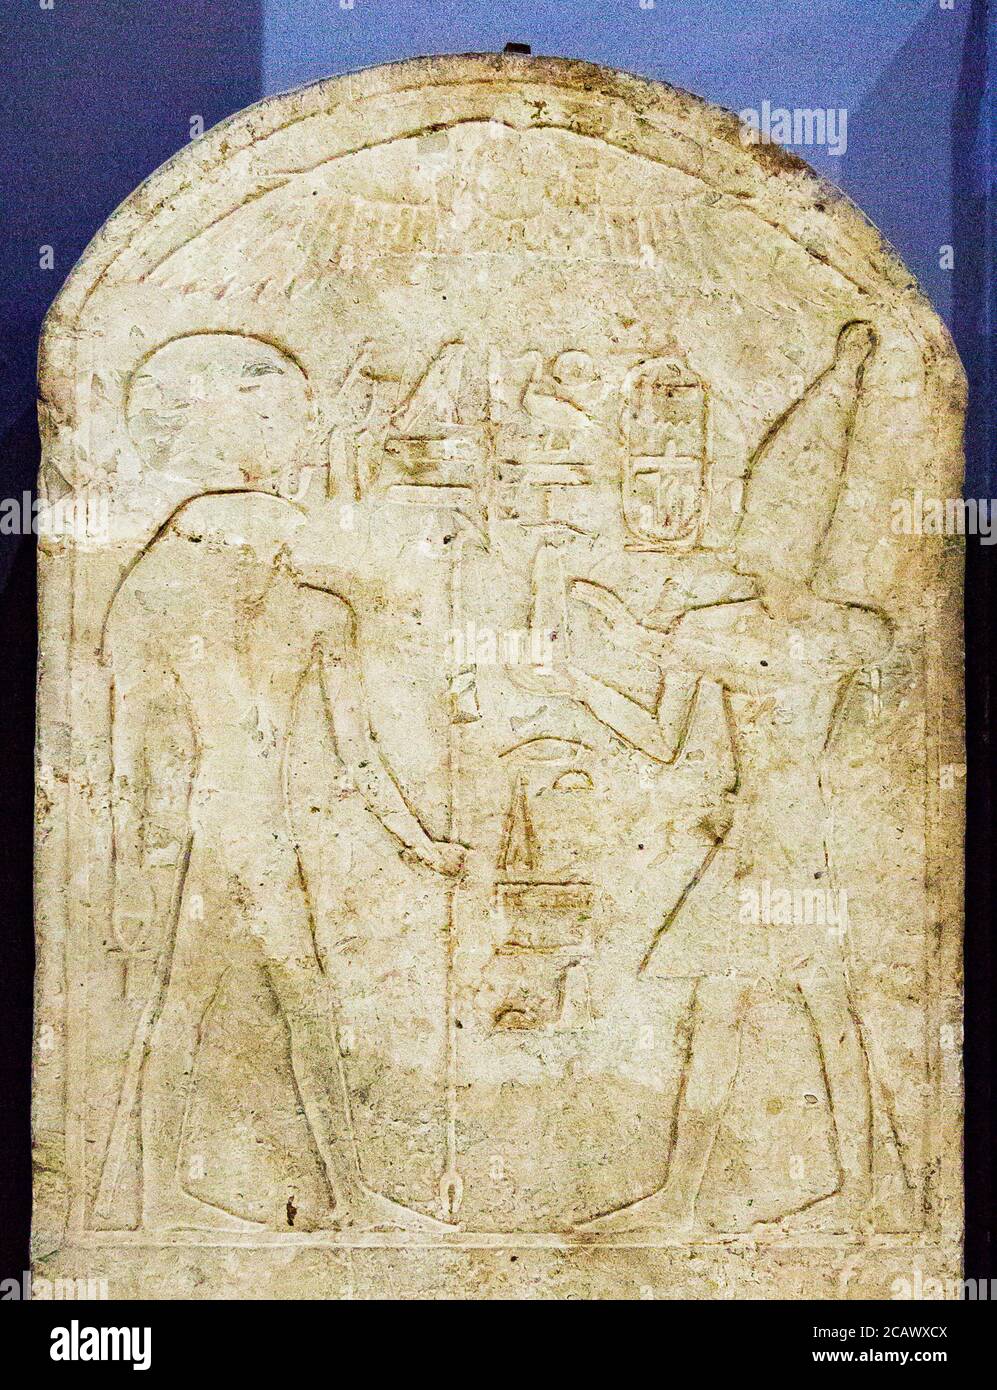 Egypte, le Caire, Musée égyptien, stèle : Amenhotep II offre un gâteau pyramidal à Ra-Horakhty. De Heliopolis. Banque D'Images